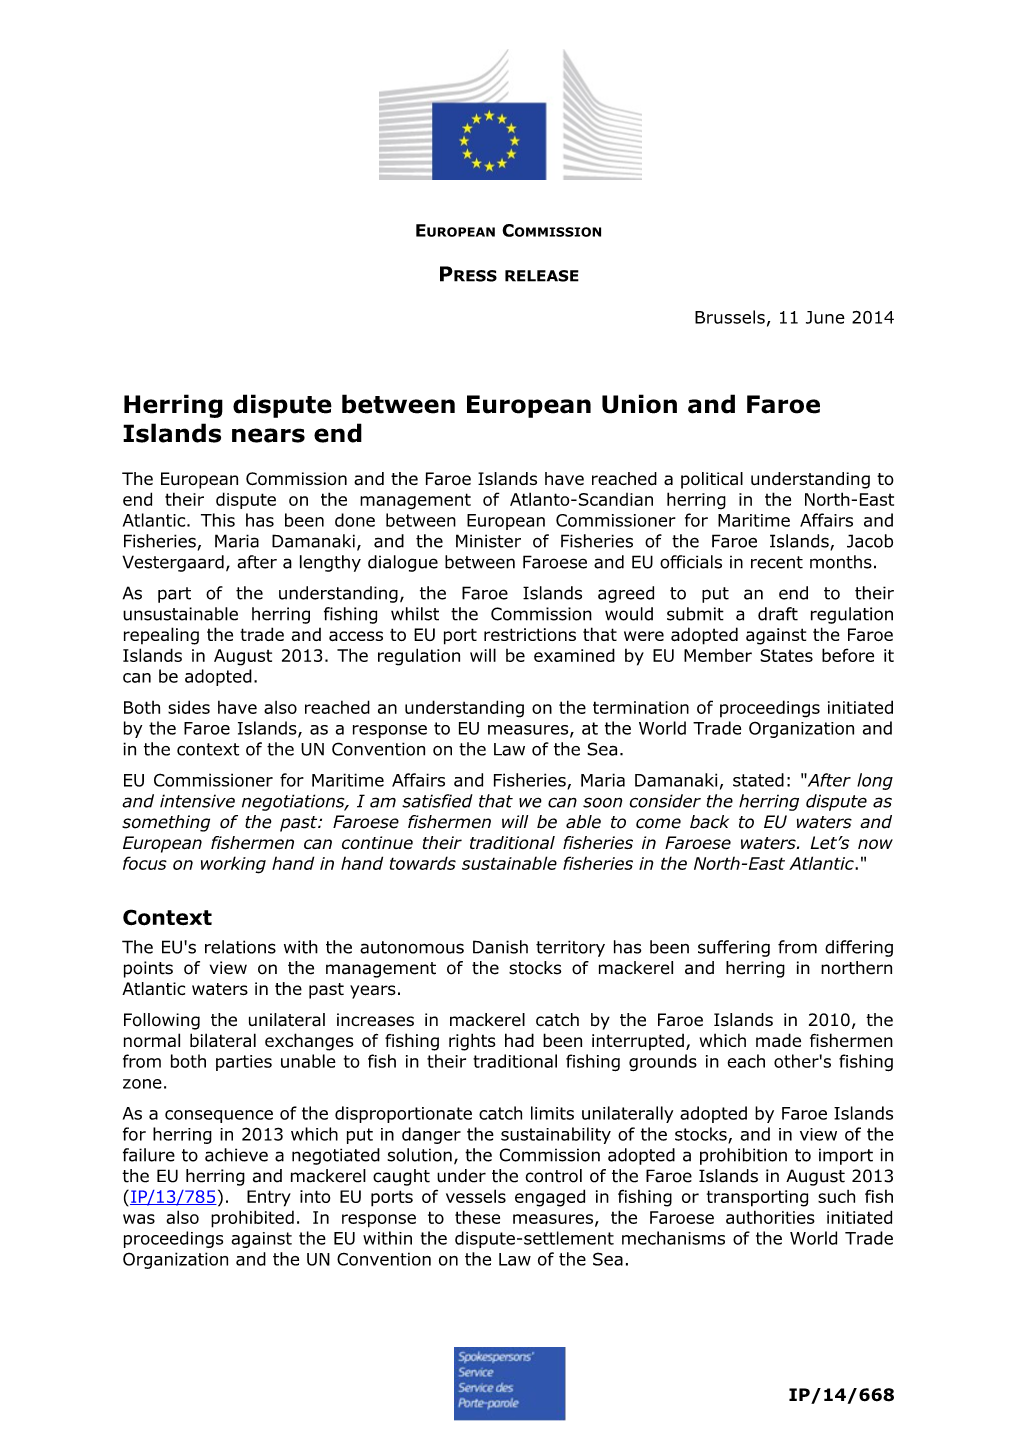 Herring Dispute Between European Union and Faroe Islands Nears End